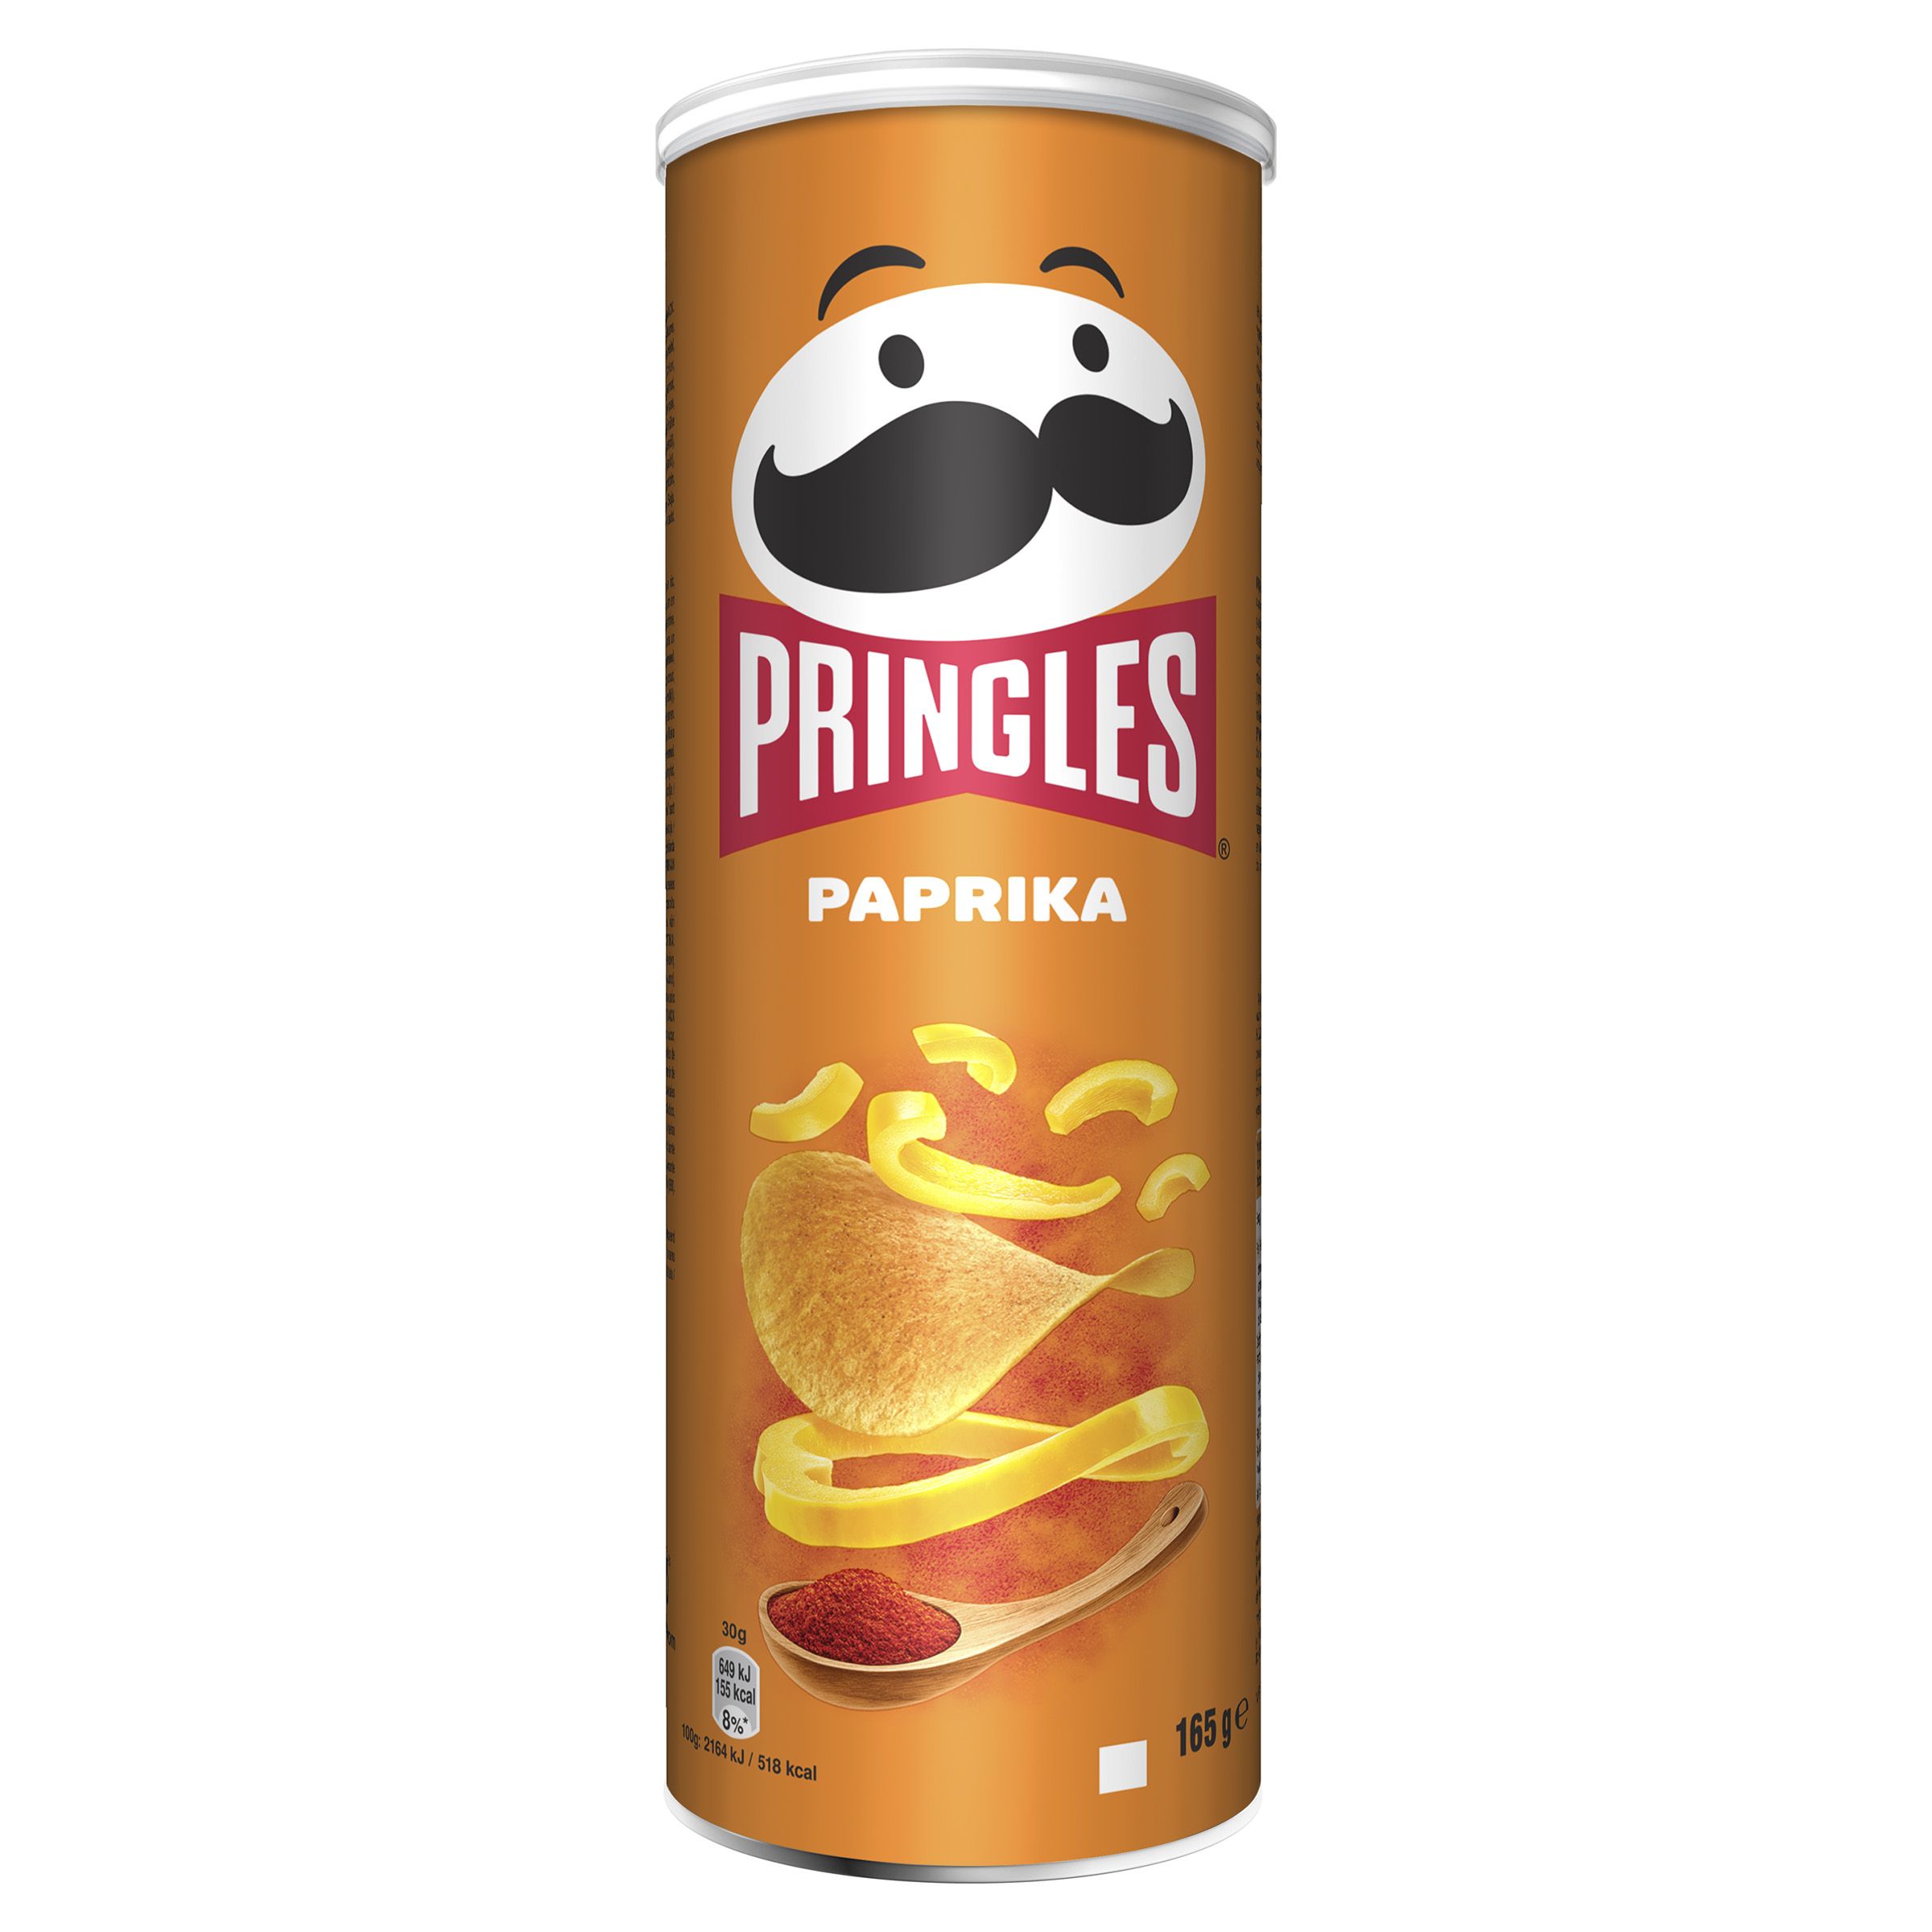 Large Paprika crisps from Pringles UK | Kellogg's